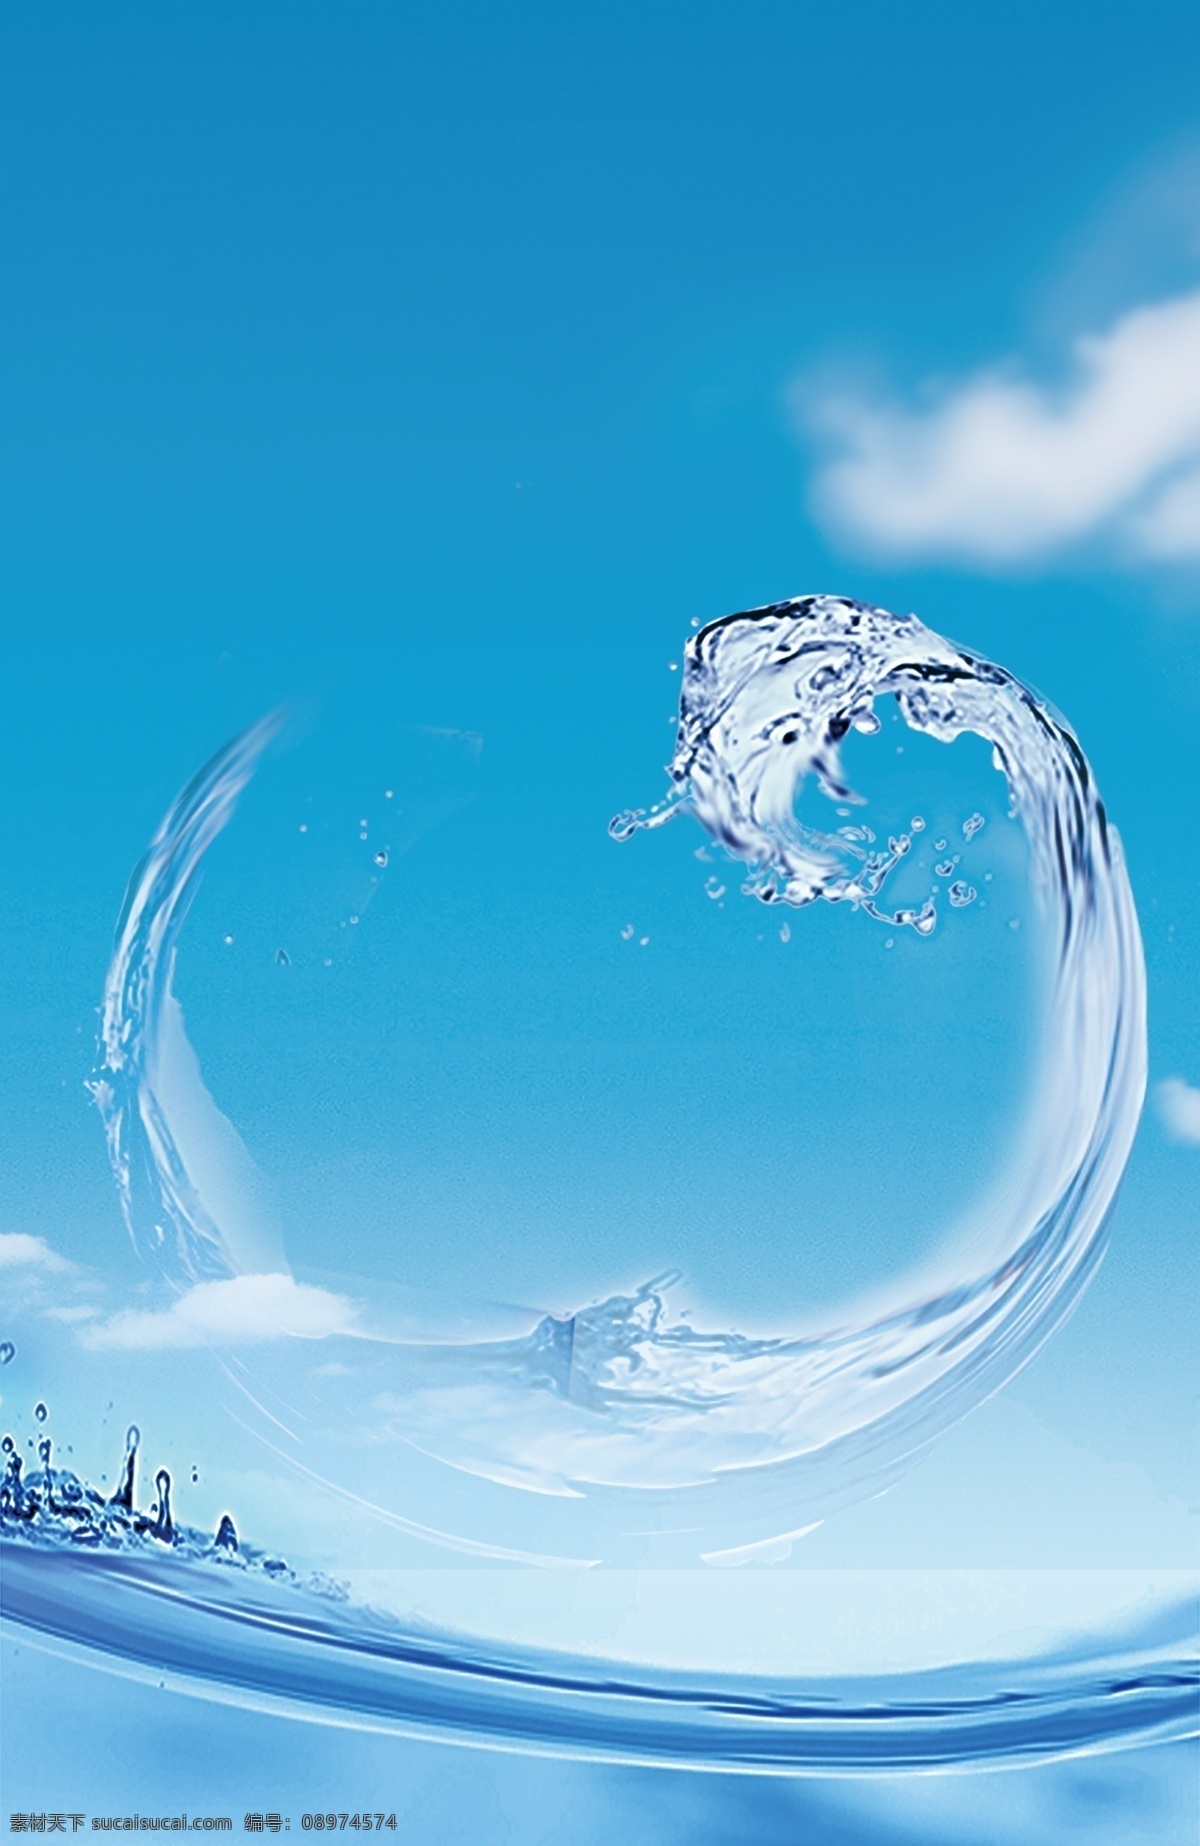 水效果 水素材 水 水花 水面 水波浪 水浪 水珠素材 透明水滴 水滴 水珠 水球 水滴素材 水滴图标 水纹 纹理 水波 水泡